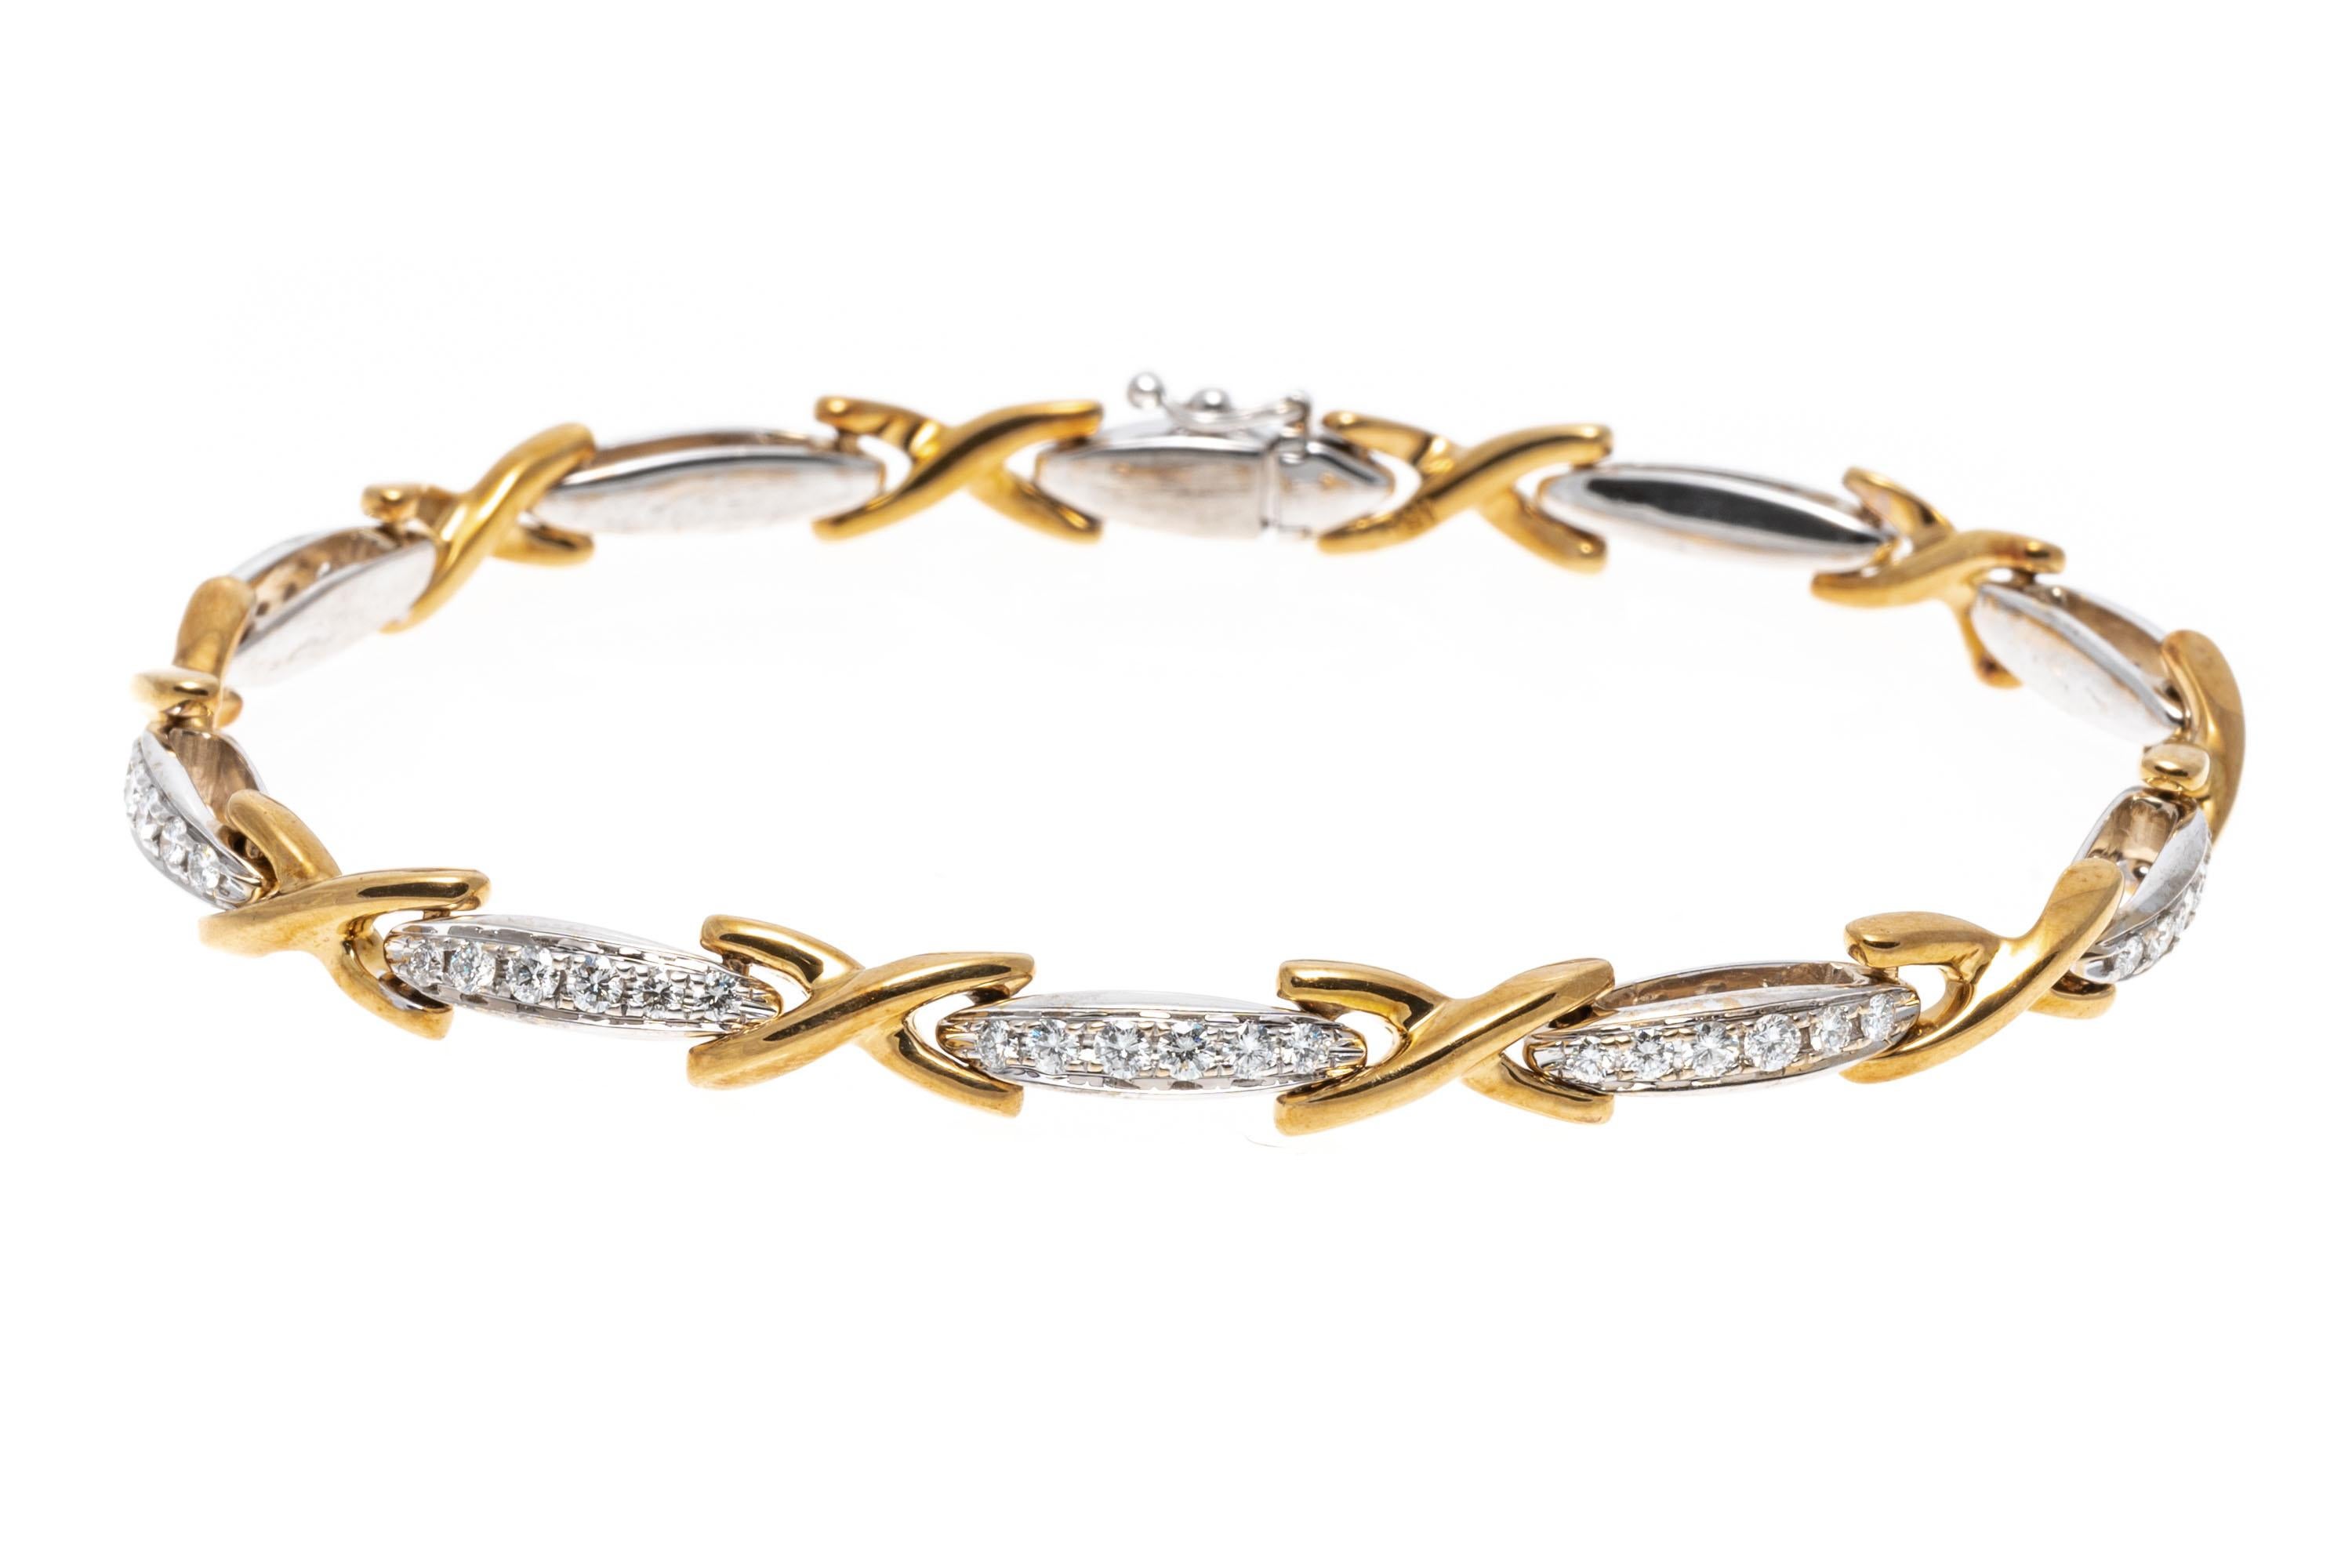 Ce bracelet à la ligne brillante est réalisé en or jaune et blanc 18 carats. Les maillons alternés de ce bracelet affichent des croix en or jaune et des barres en or blanc. Les maillons en or blanc sont sertis de diamants taillés en brillant, ce qui